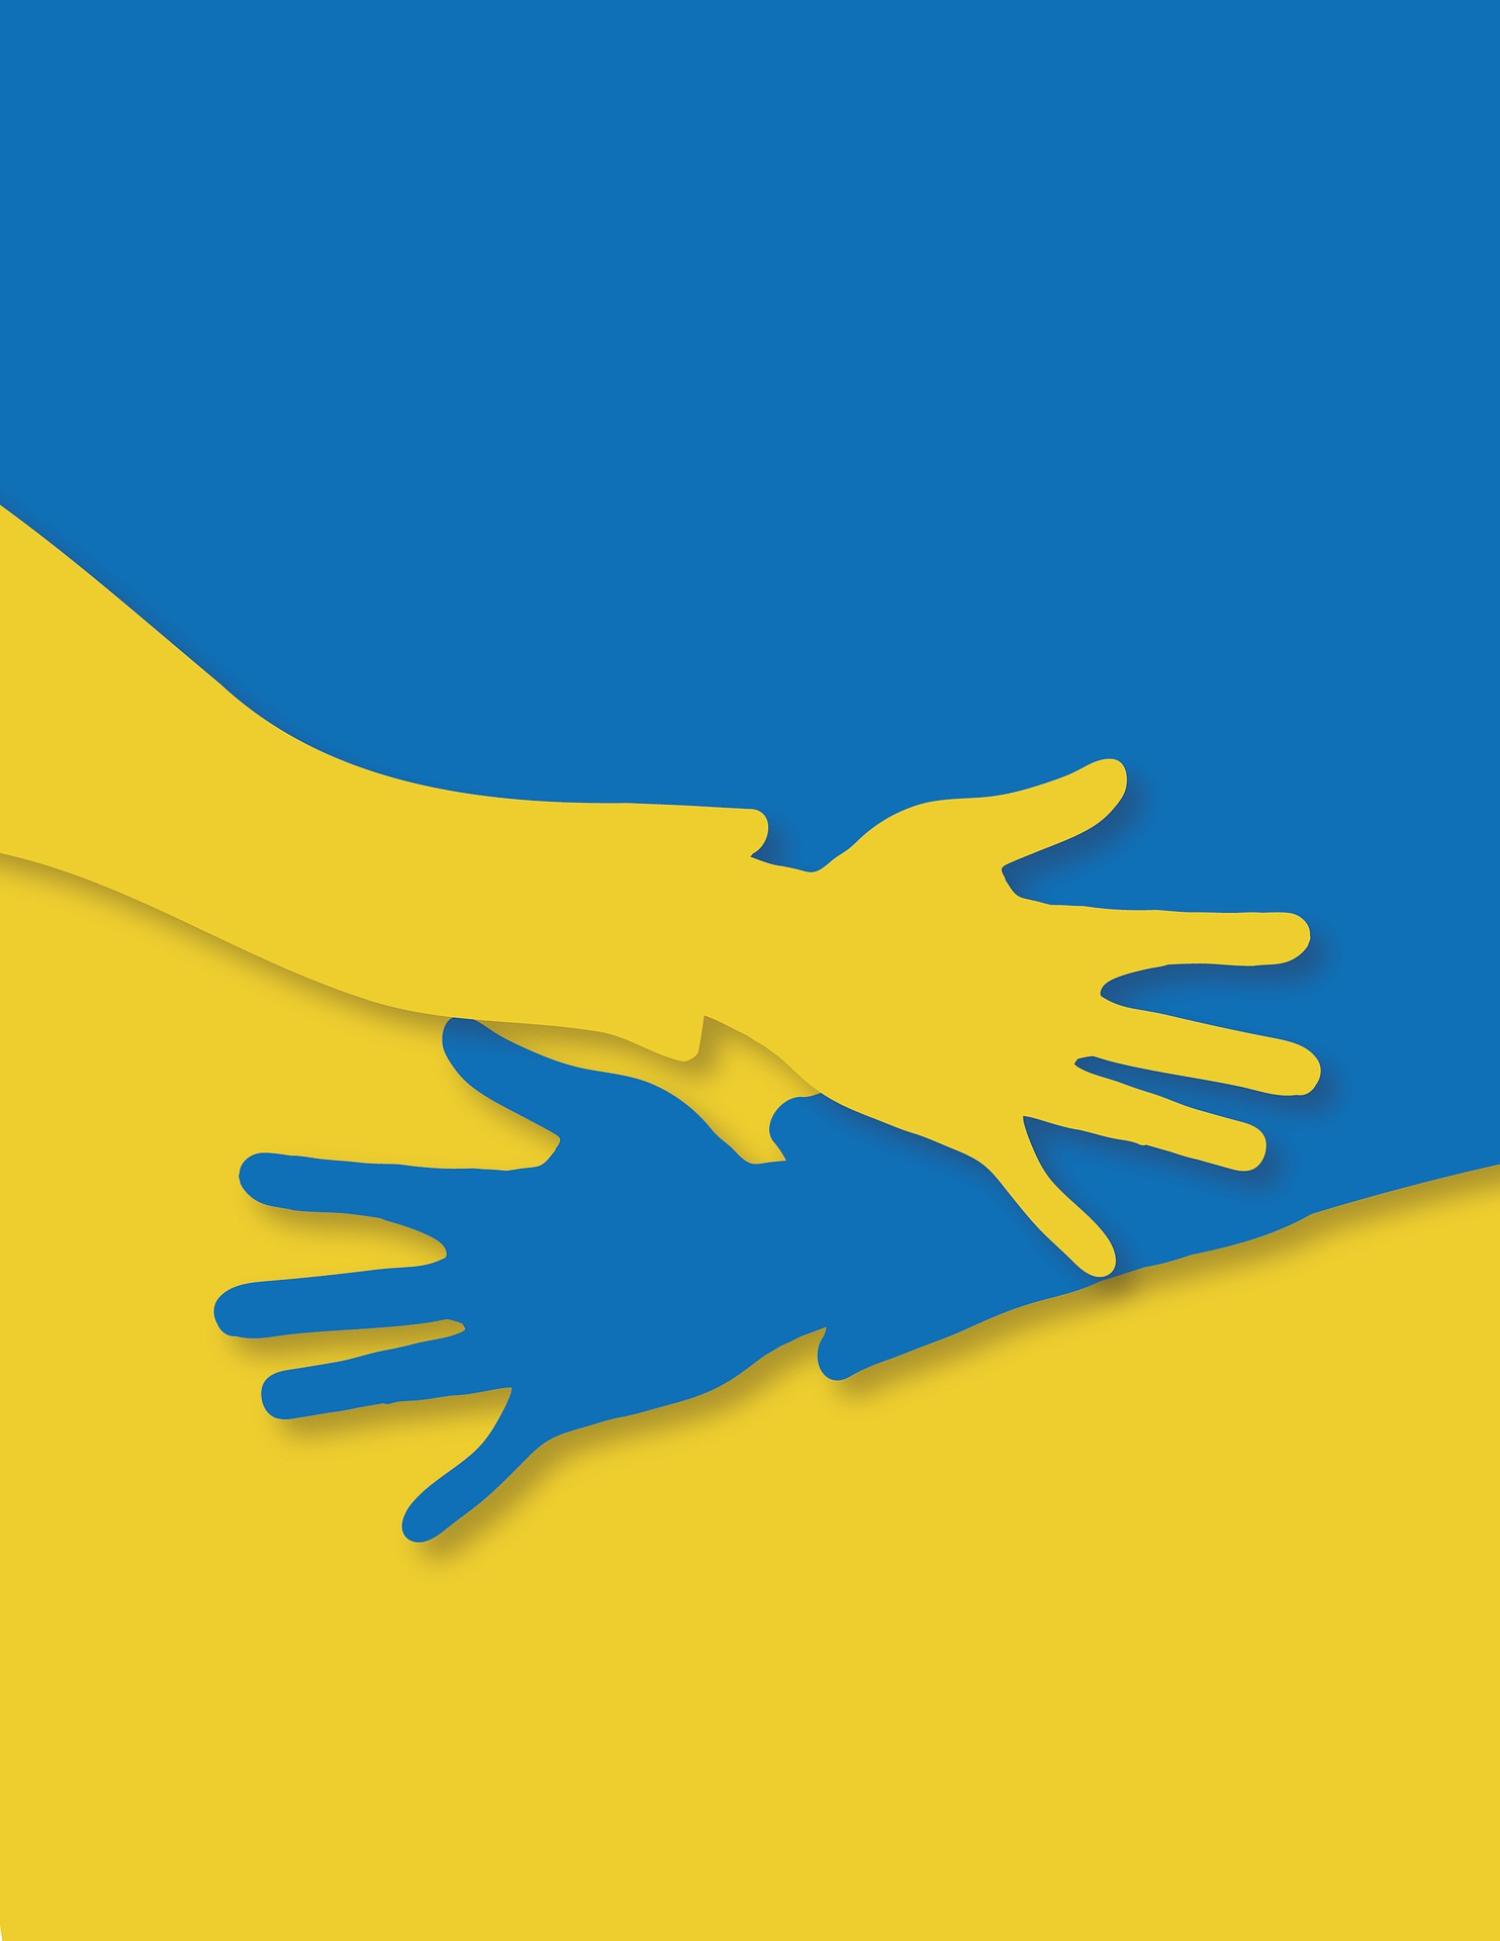 twee handen in blauw-geel, de kleuren van de Oekraïense vlag